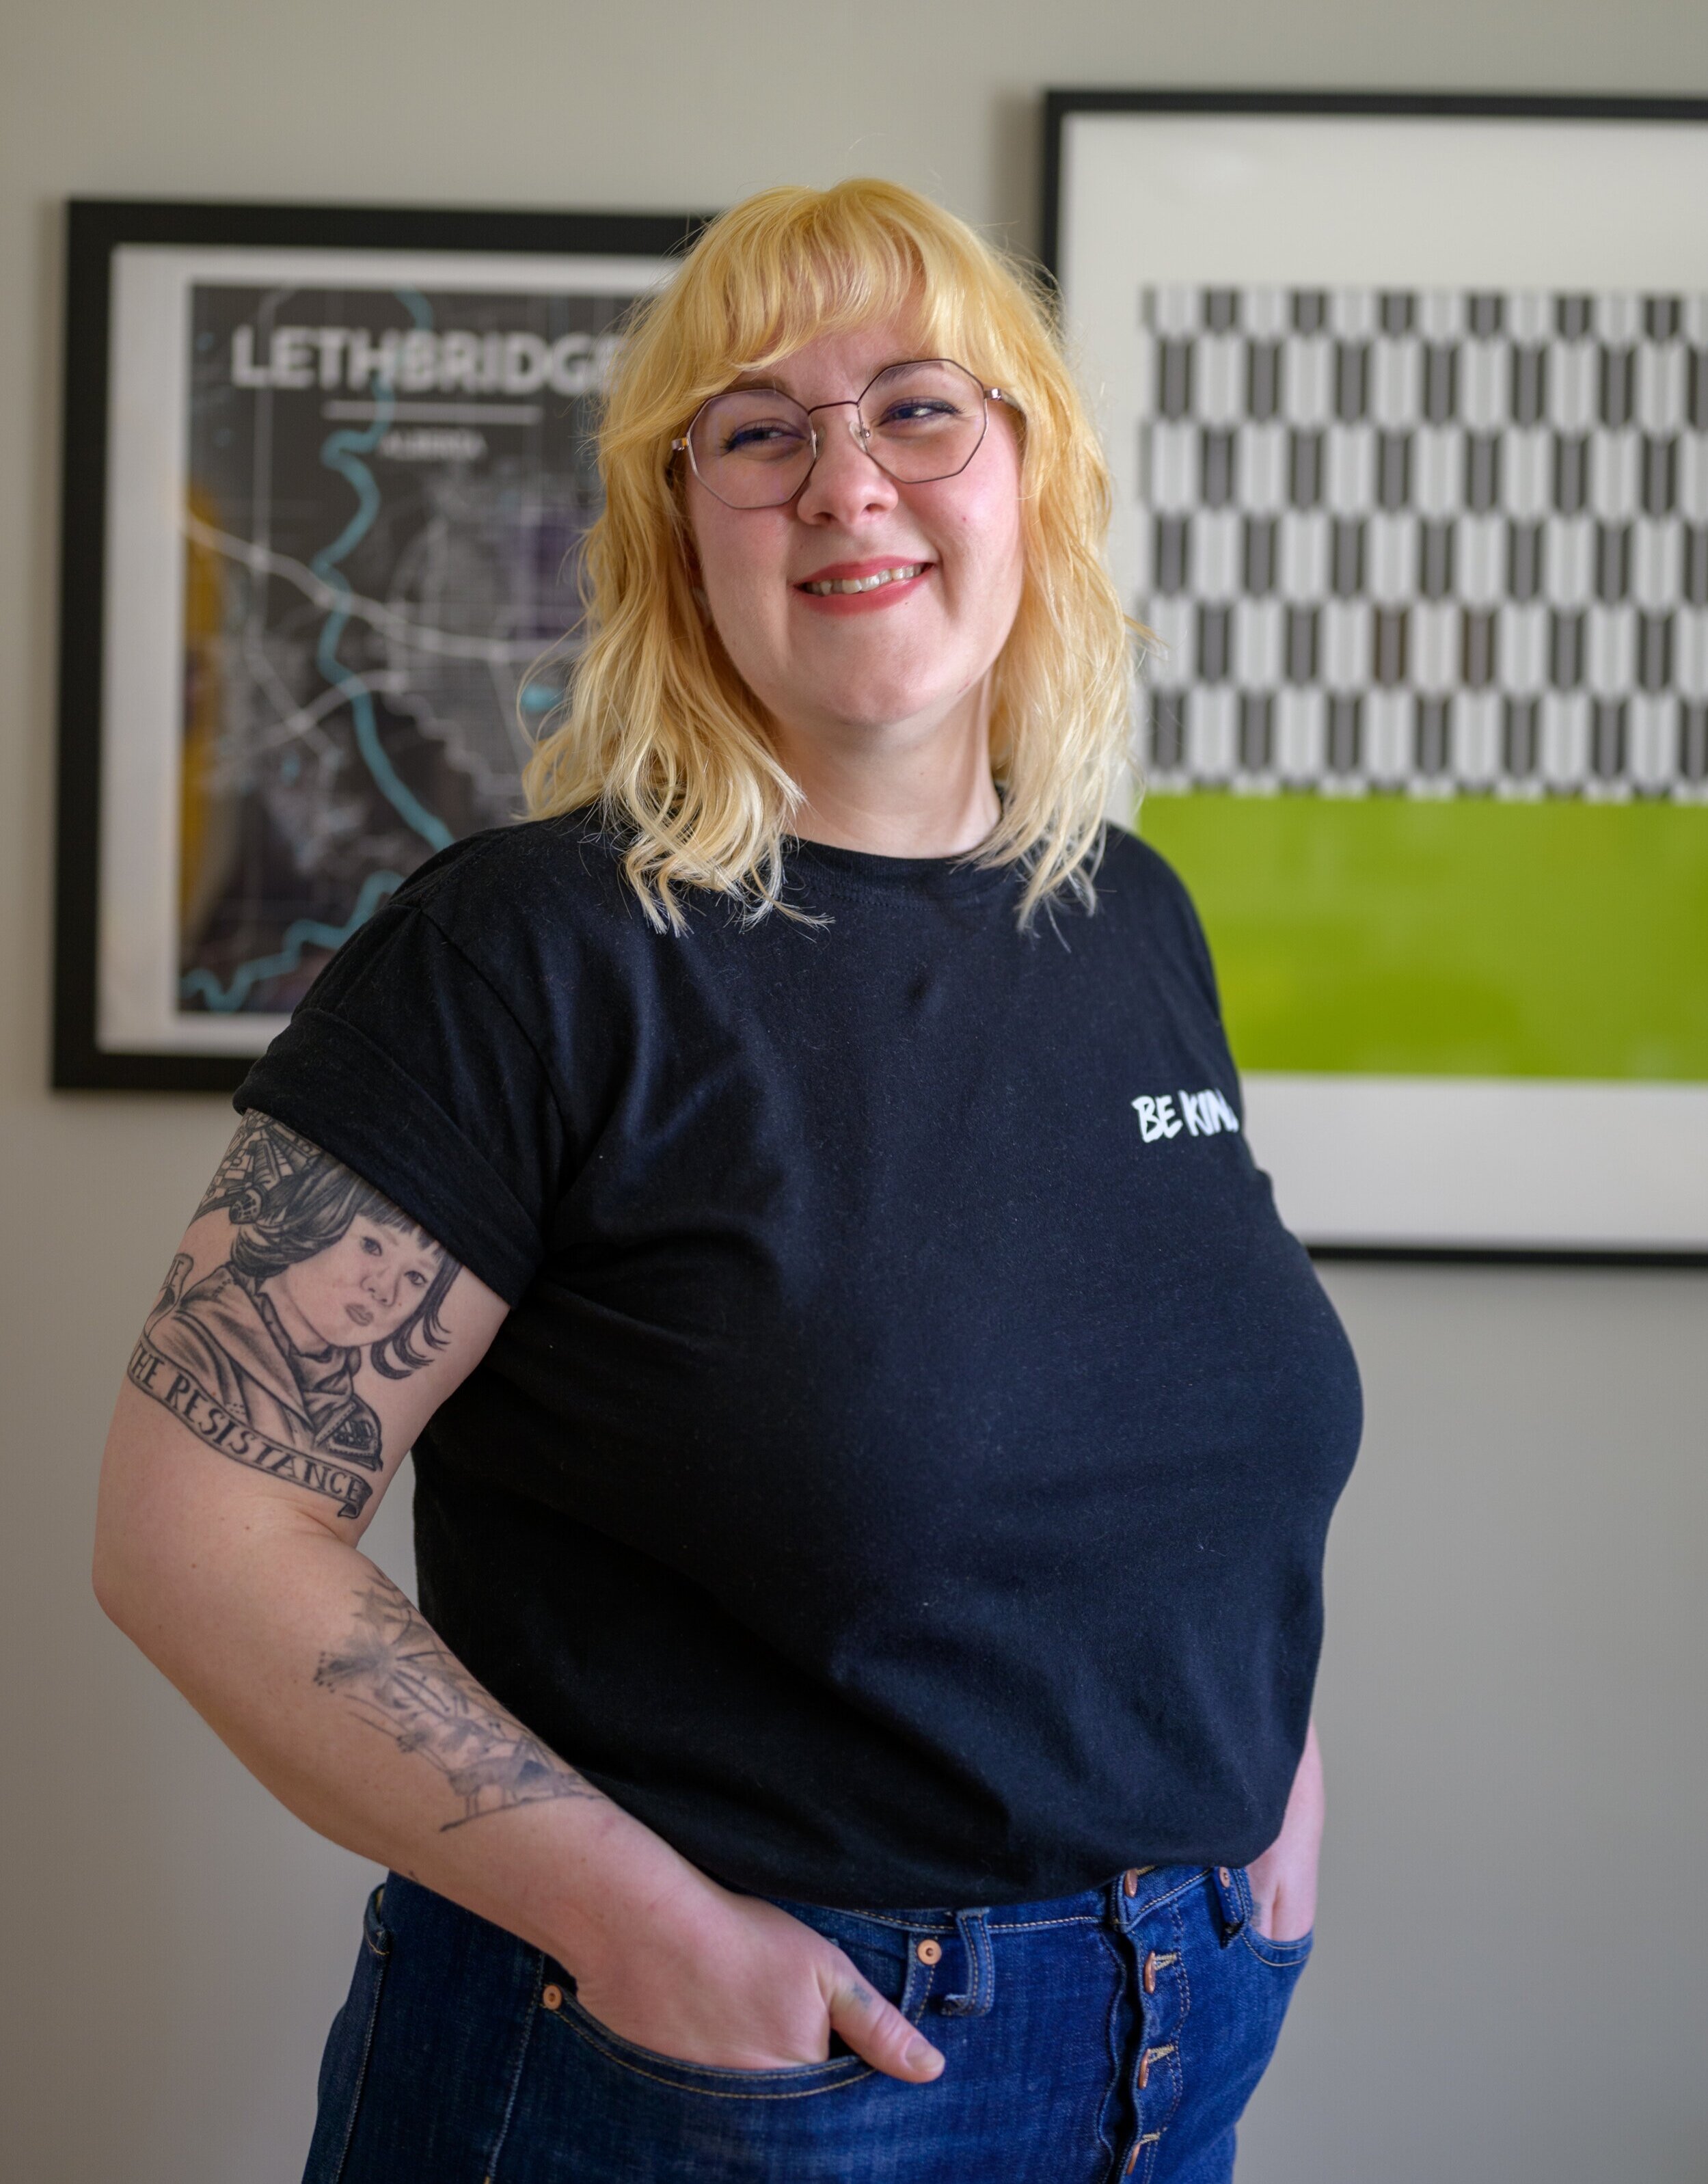 Meet Jenn — Jenn Prosser for Lethbridge City Council